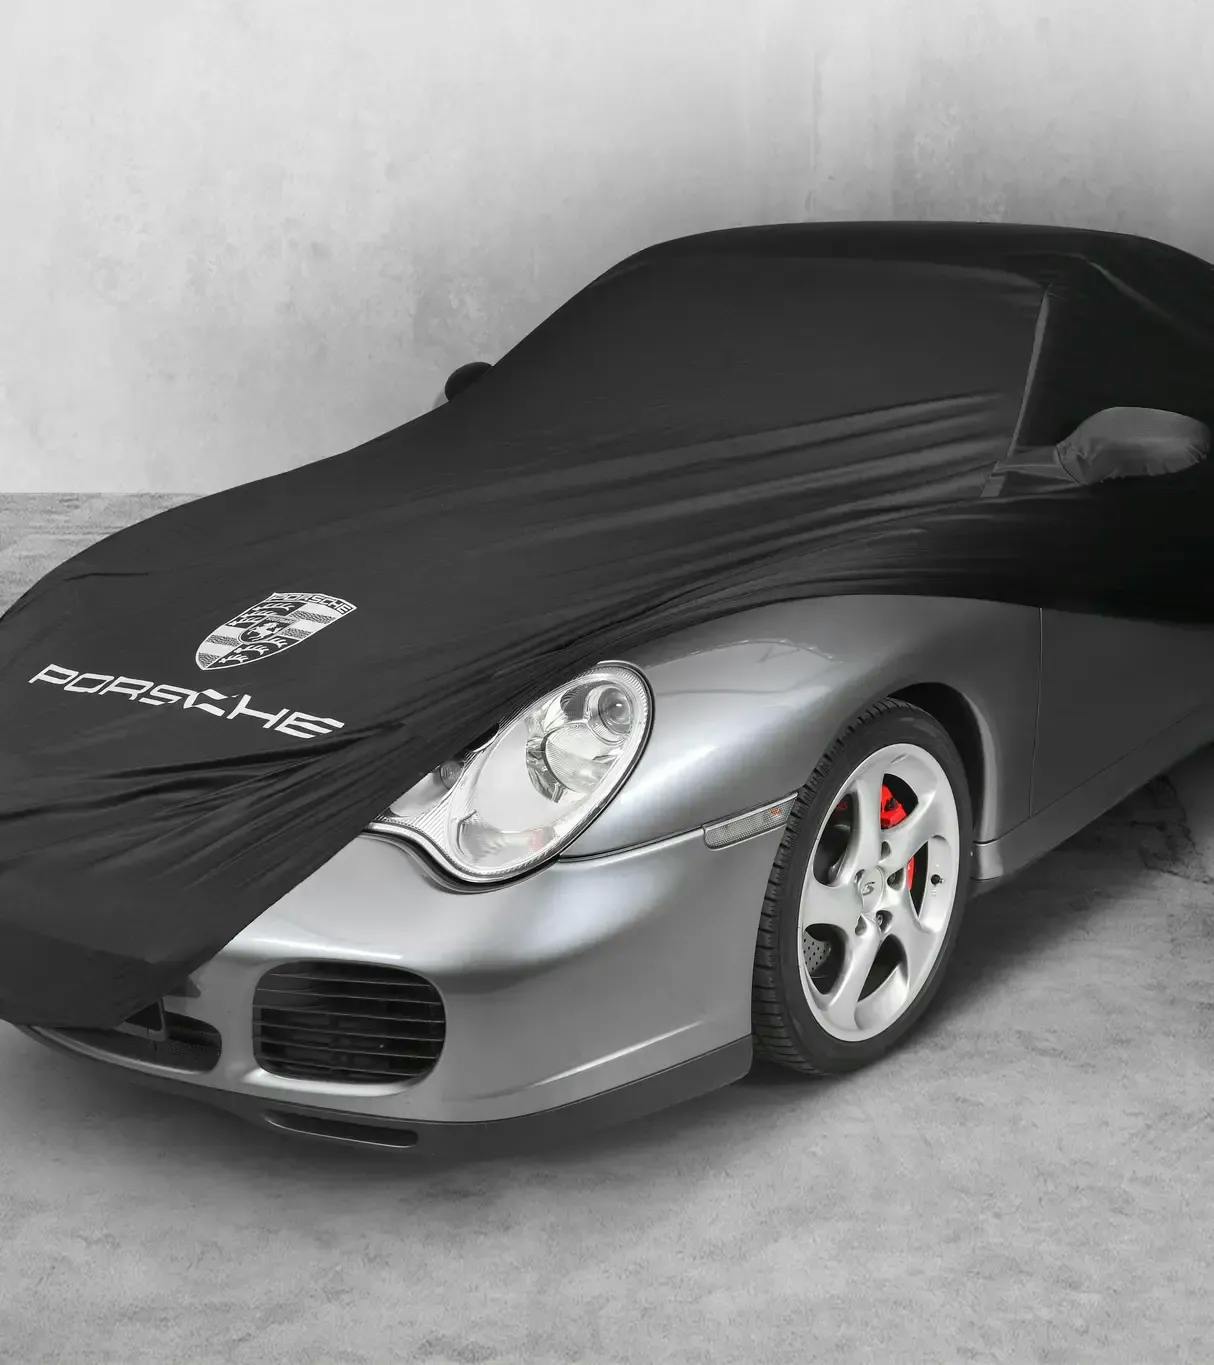 Housse de Protection Extérieur pour Porsche 991 Turbo, bache porsche 911